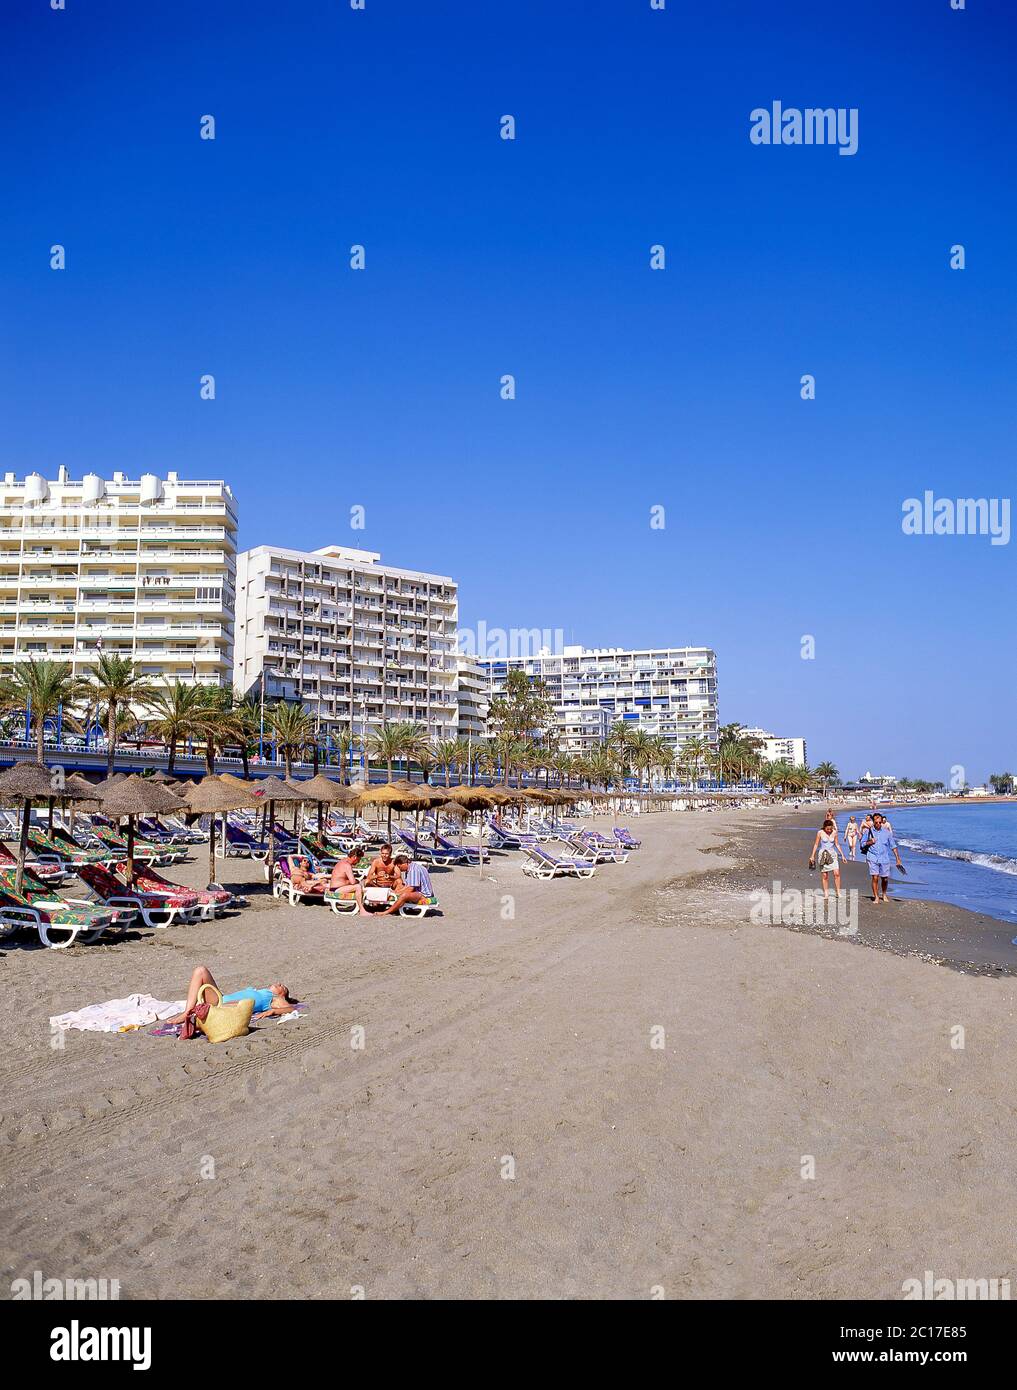 Beach view, Marbella, Costa del Sol, Malaga Province, Andalucia (Andalusia), Kingdom of Spain Stock Photo